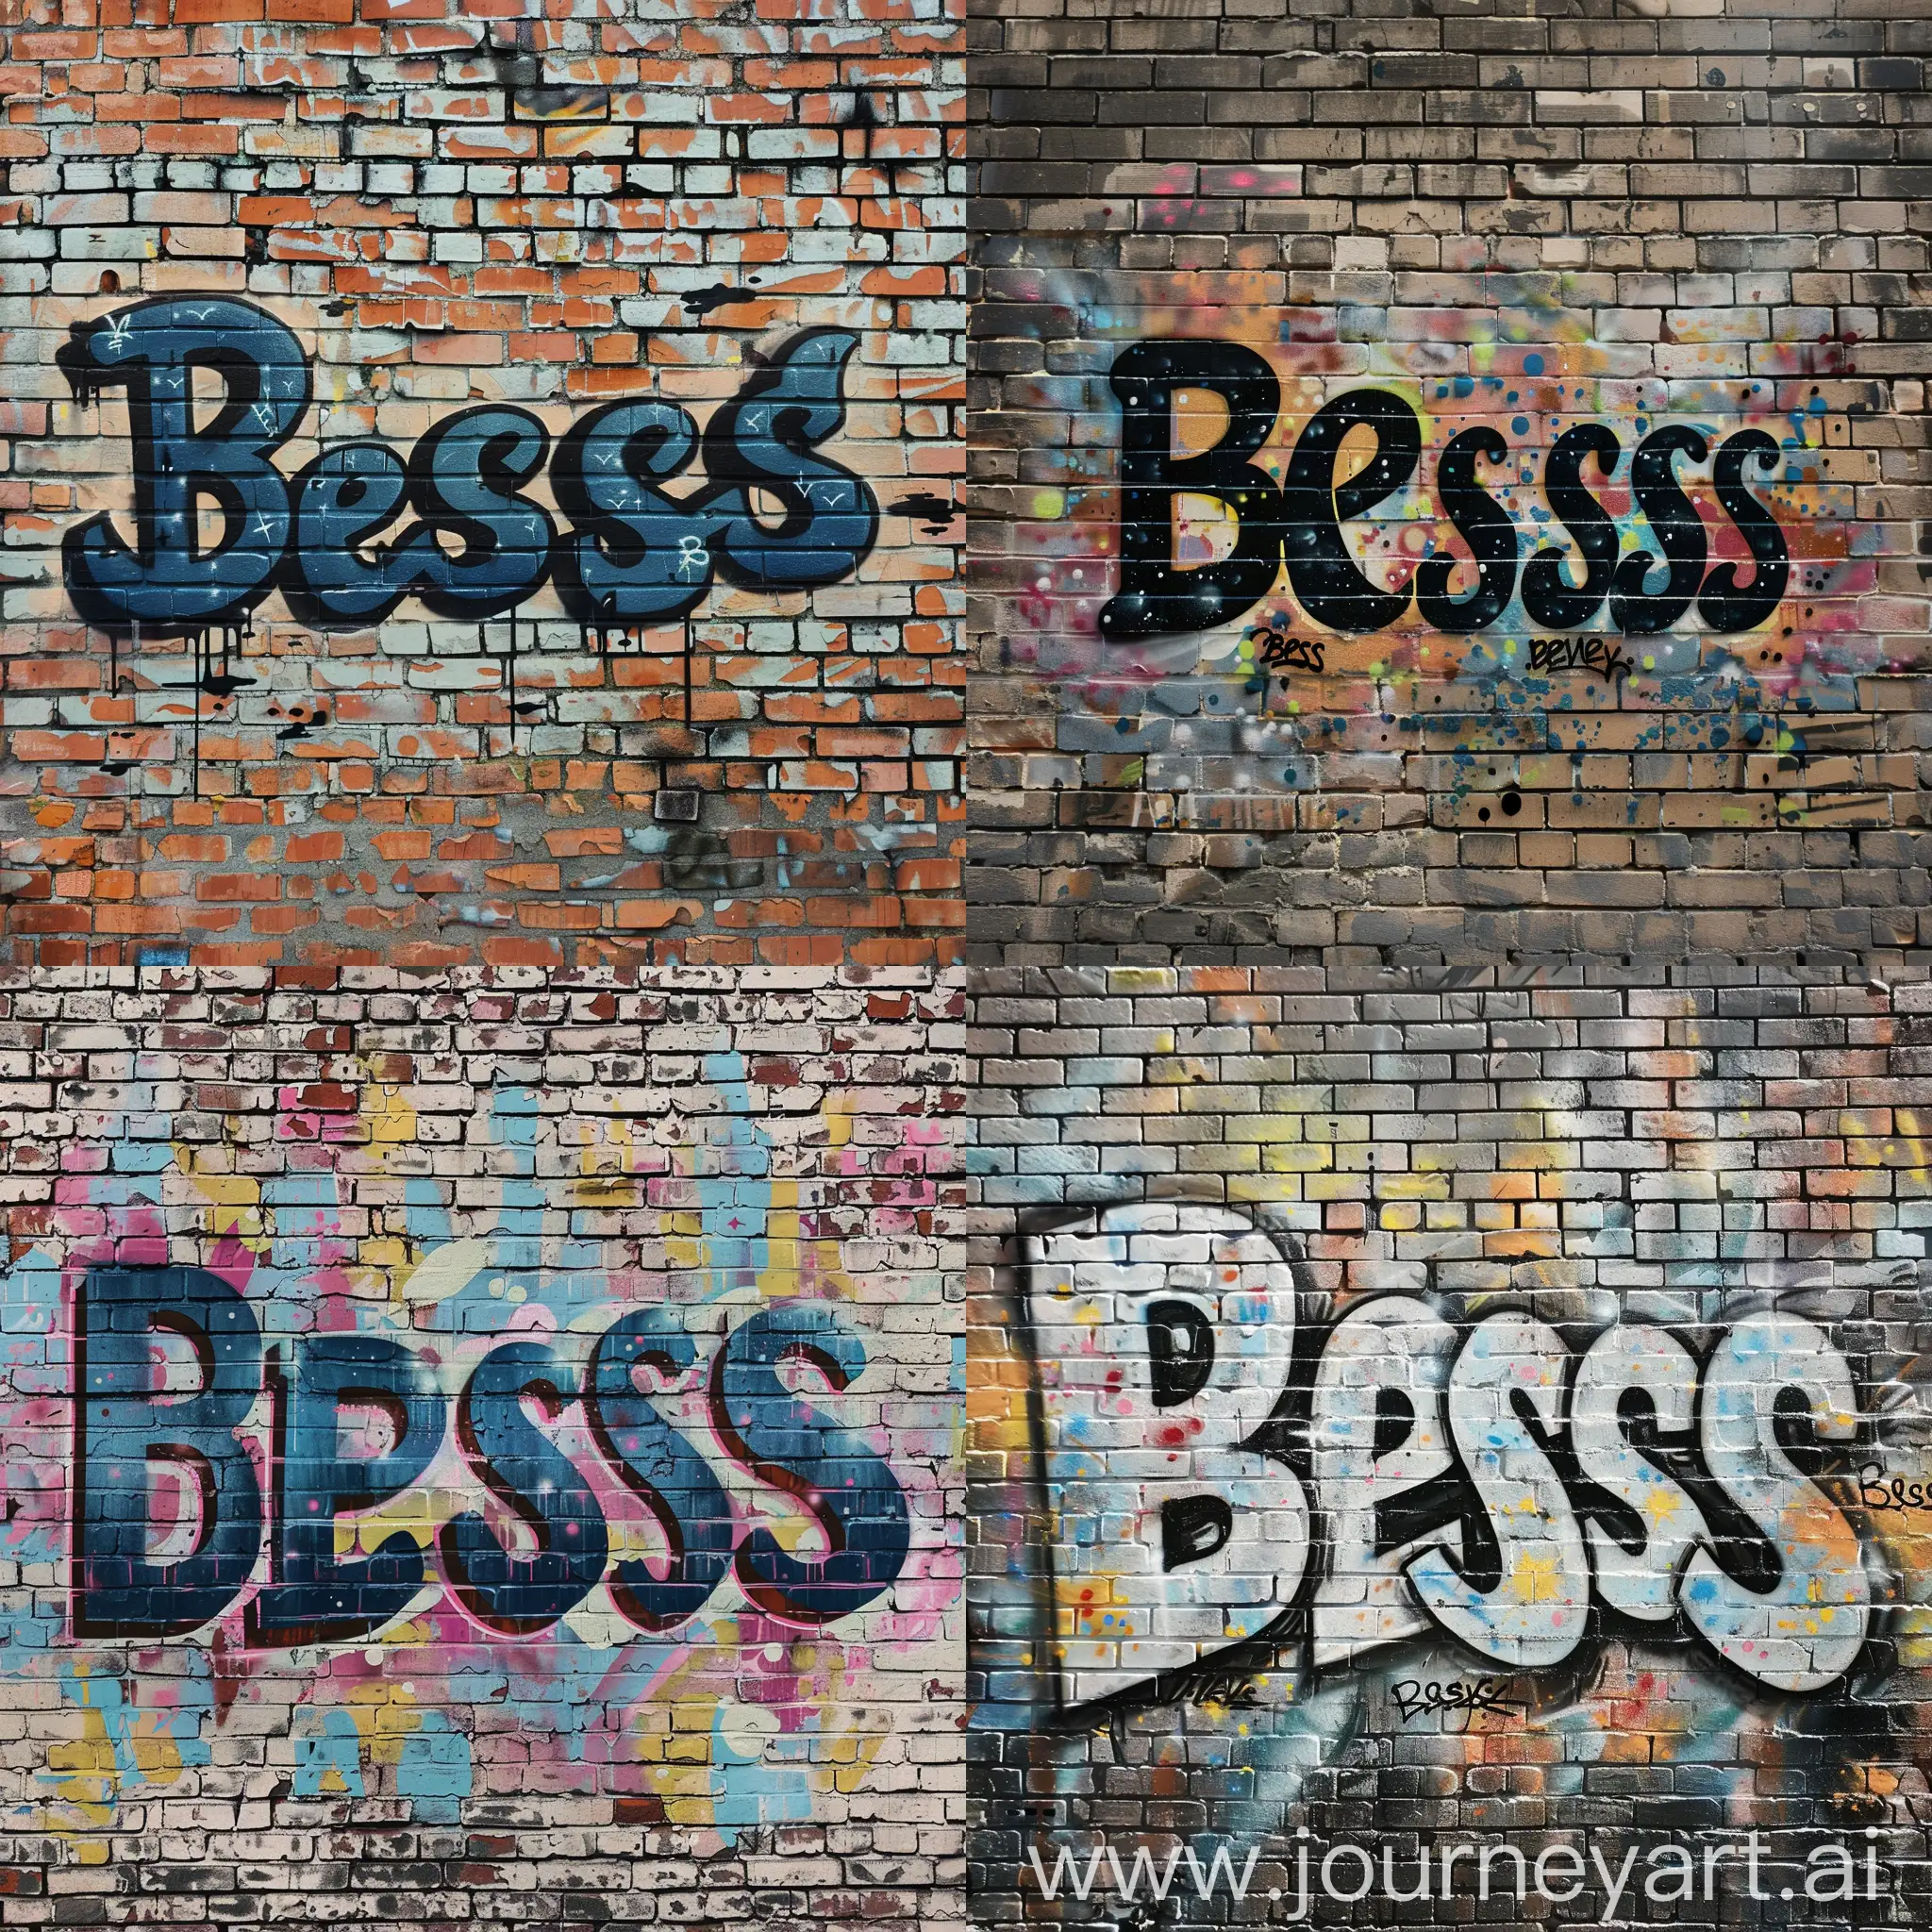 Criar graffiti artístico com a escrita Bless, fundo da parede de tijolo